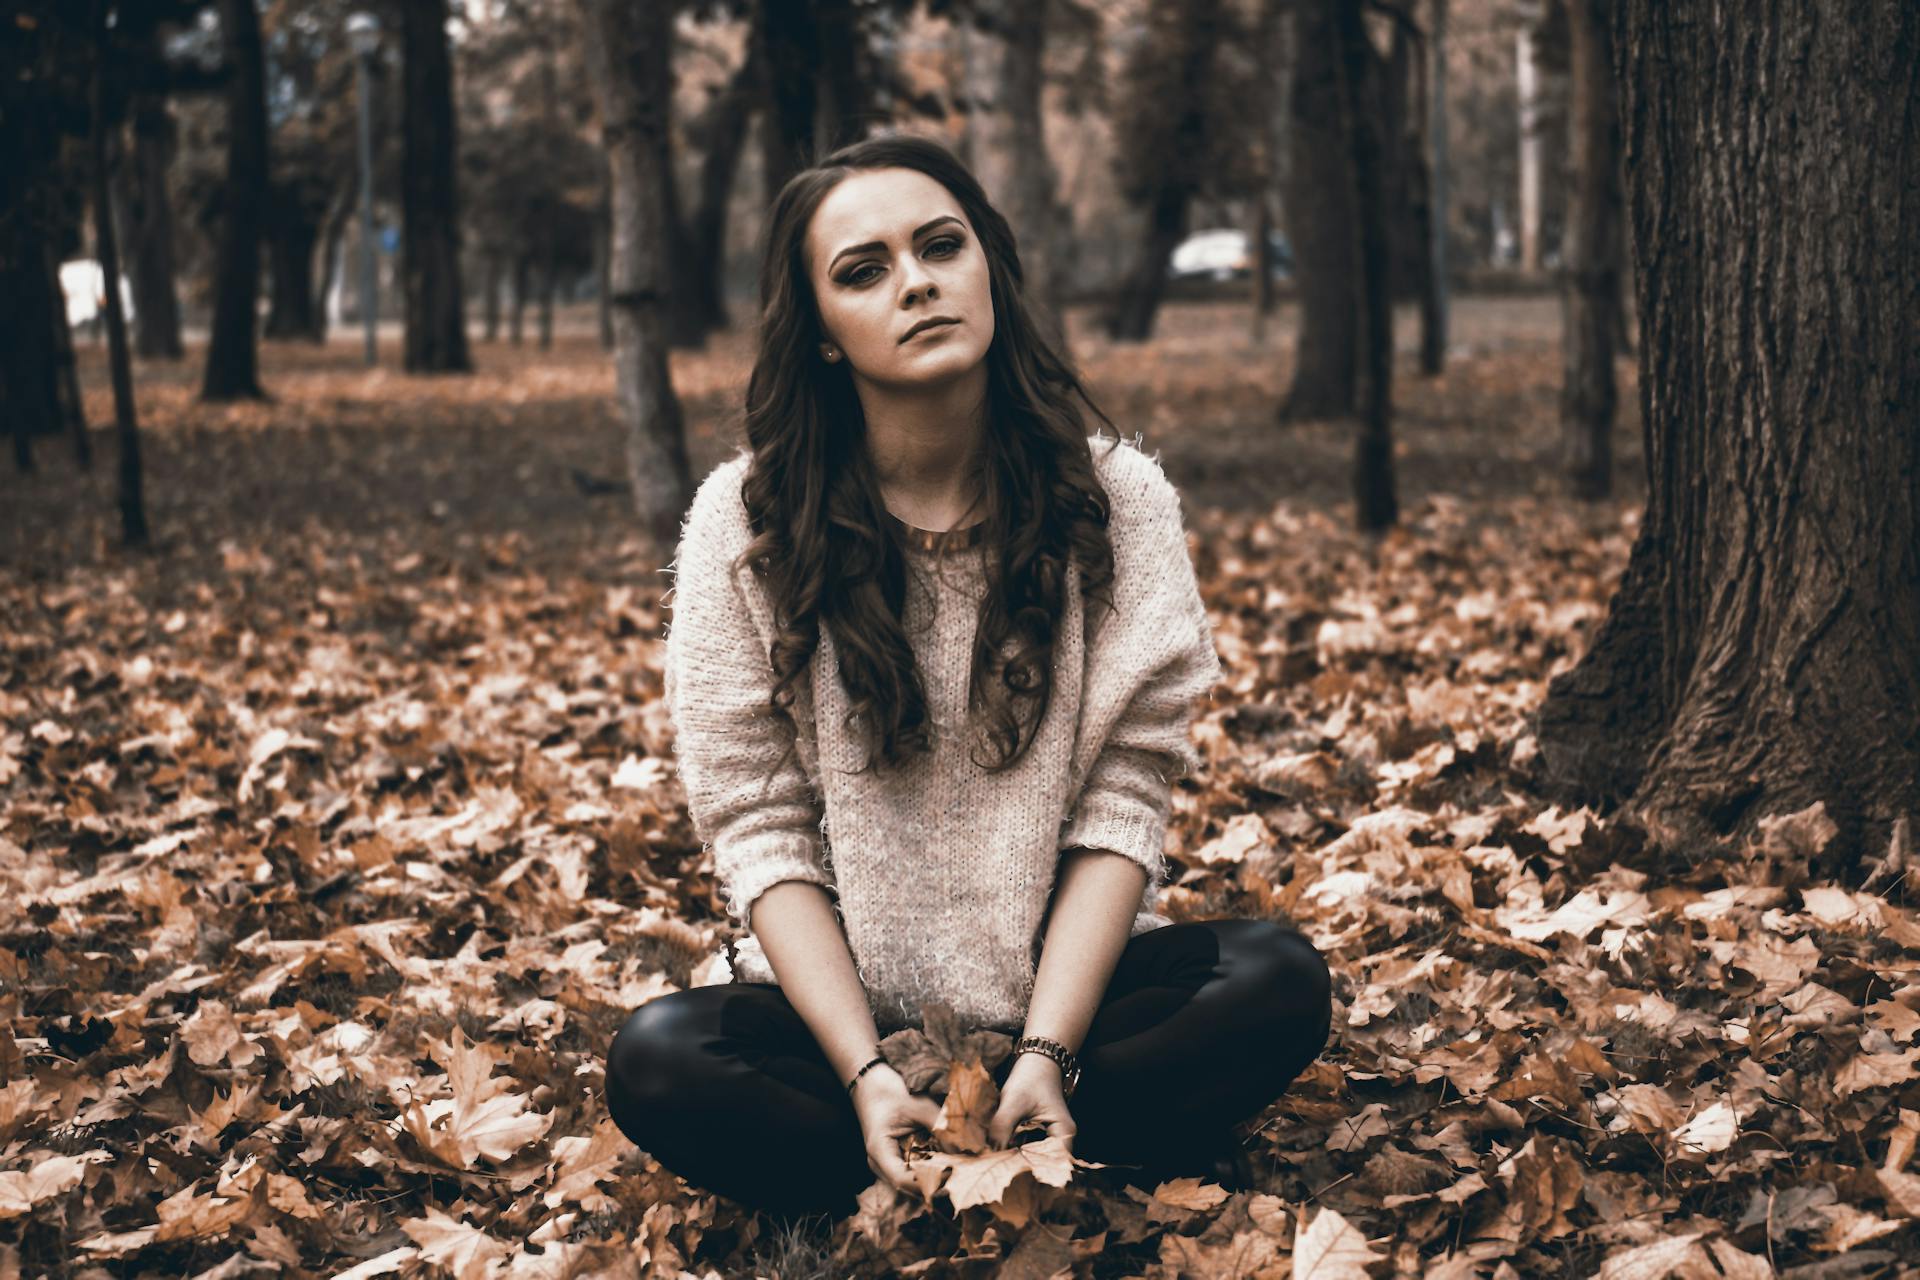 Une jeune femme assise dans une forêt tenant des feuilles mortes | Source : Pexels